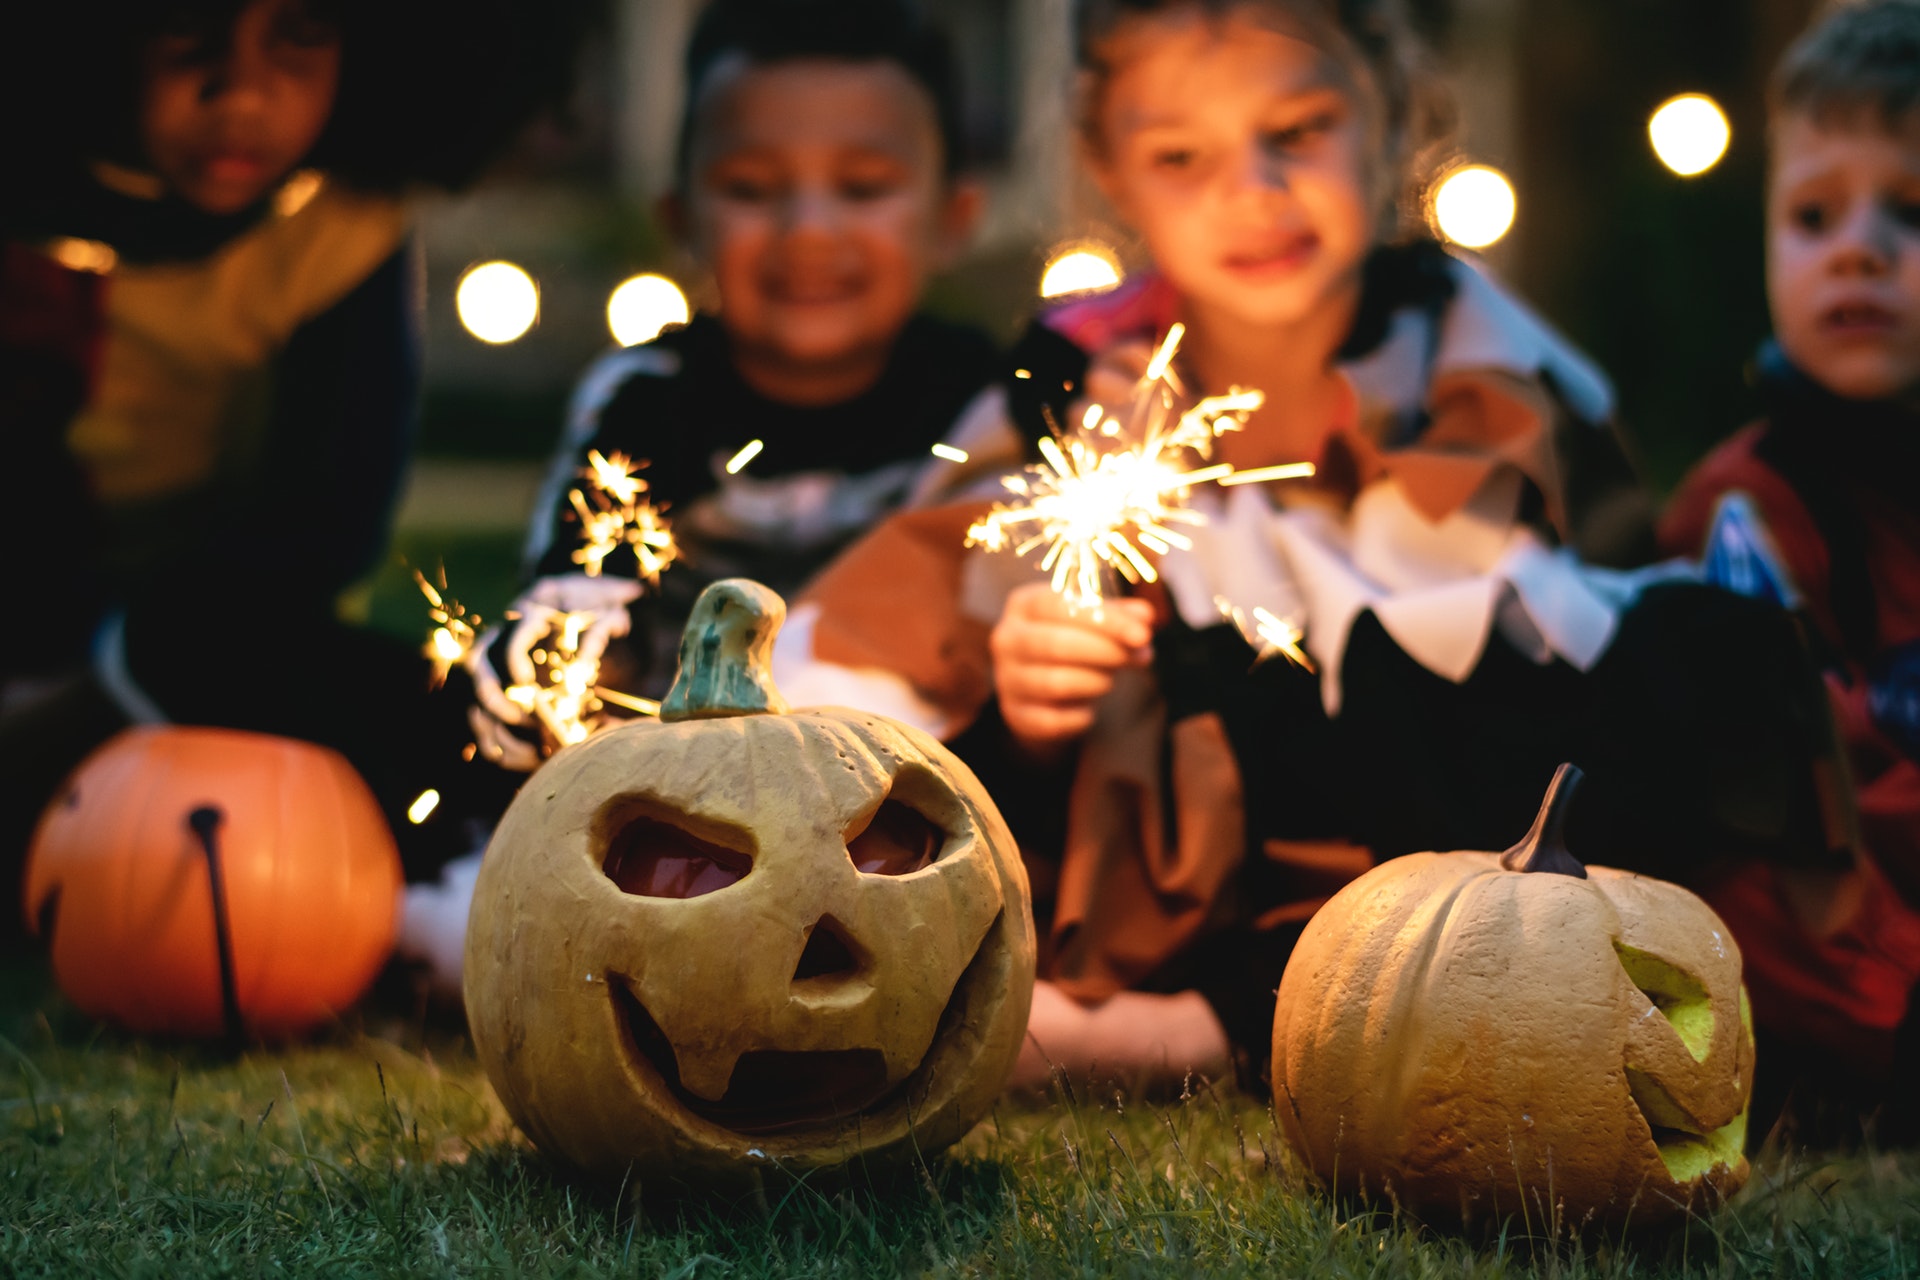 Subtances chimiques problématiques: faut-il avoir peur des costumes & accessoires d’Halloween?